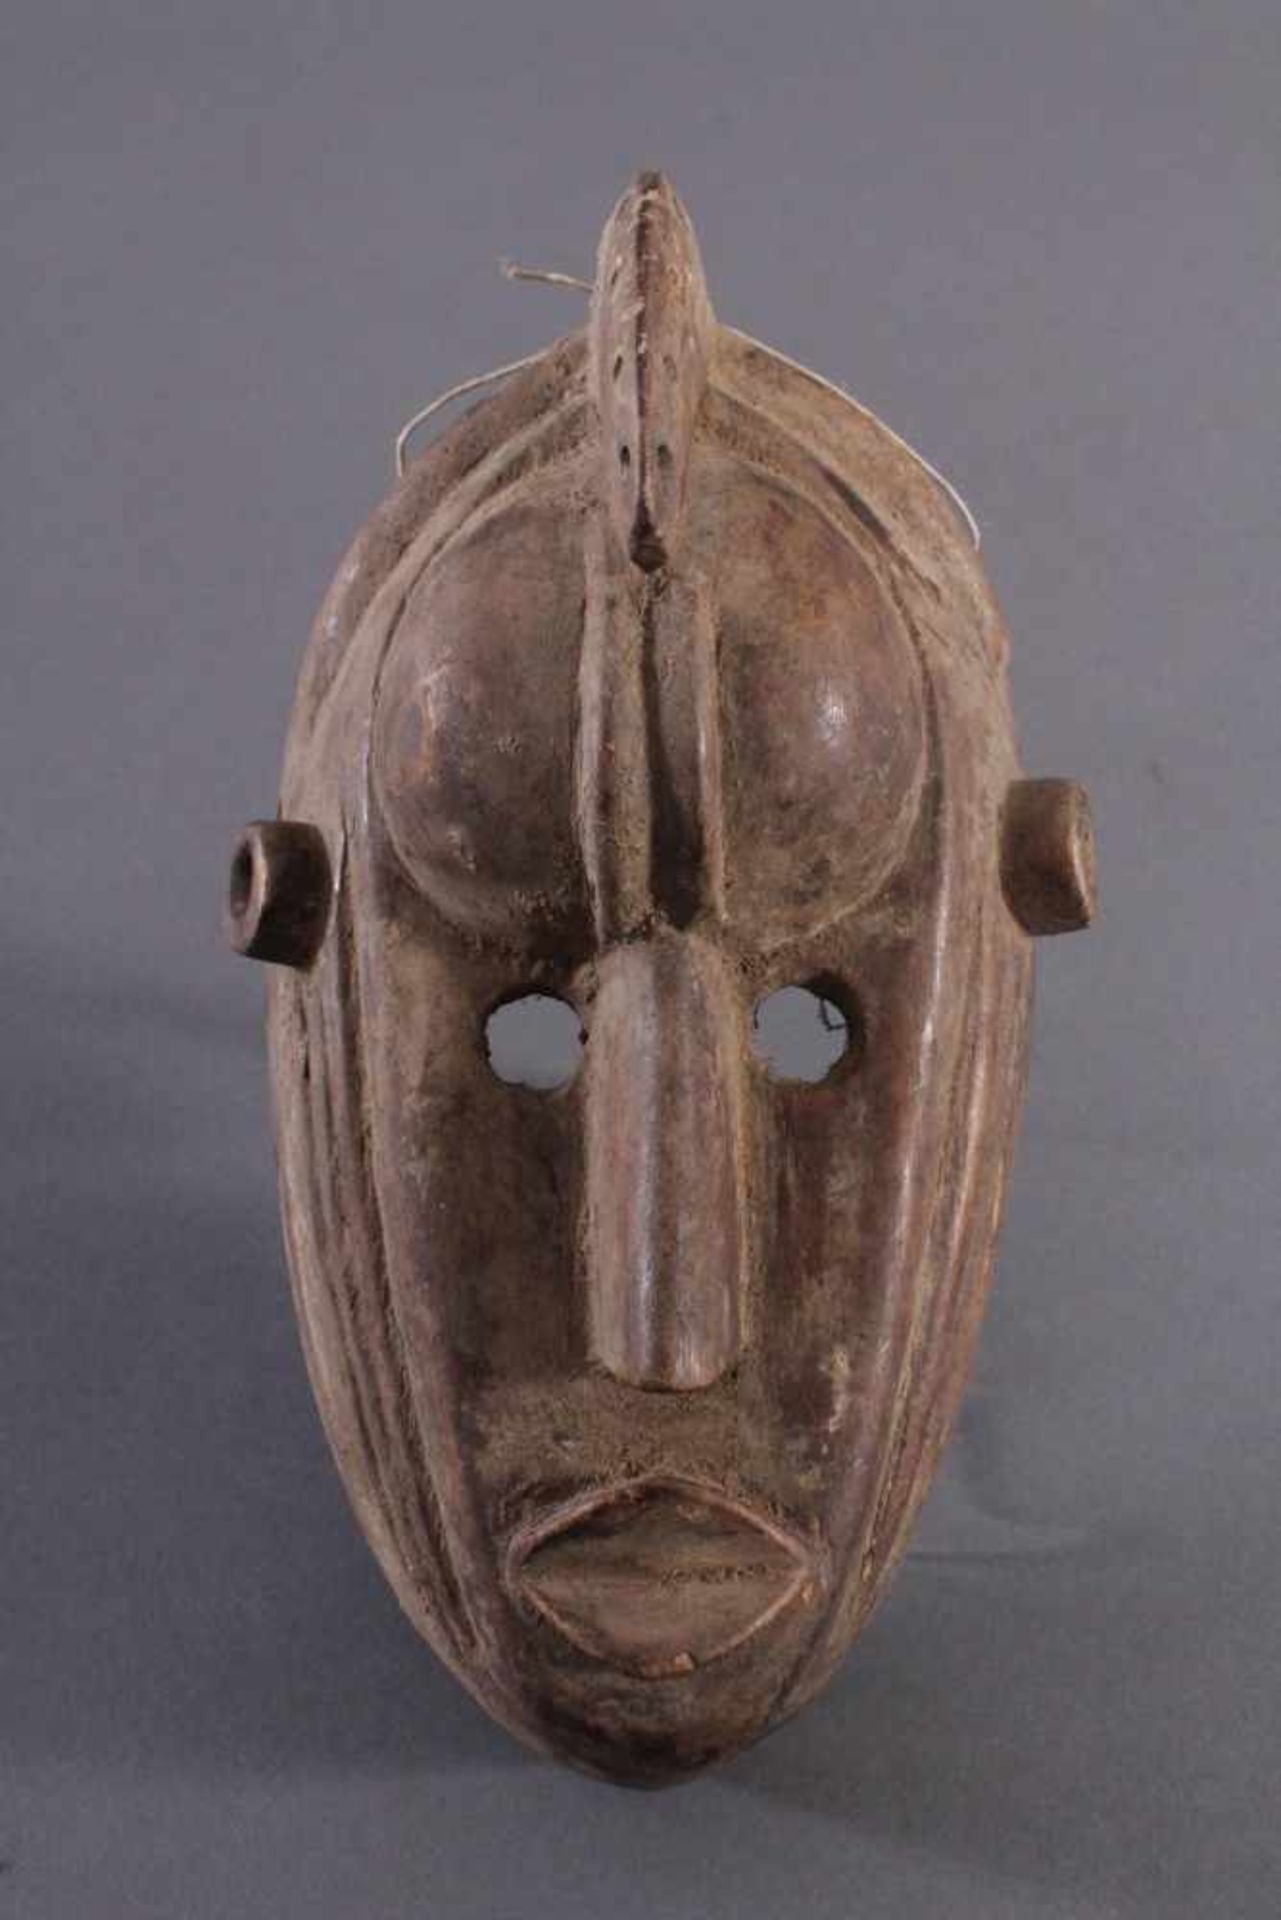 Antike Maske, Mumuye, NigeriaHelles Holz, geschnitzt, braune Patina, ca. L-26 cm- - -20.00 % buyer's